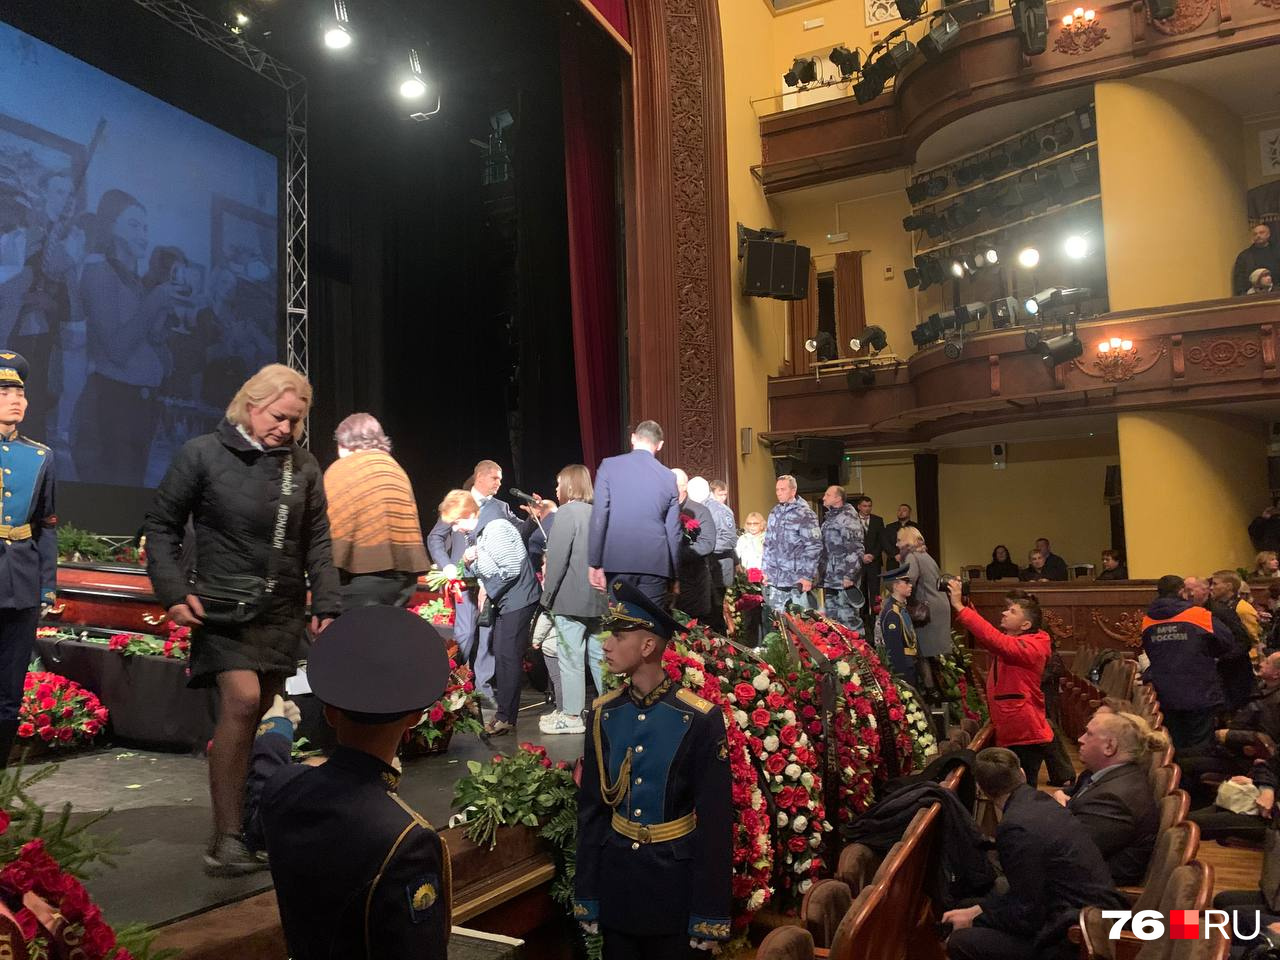 После выступления общественных деятелей, актеров и друзей Сергея Пускепалиса на сцену начали подниматься все желающие